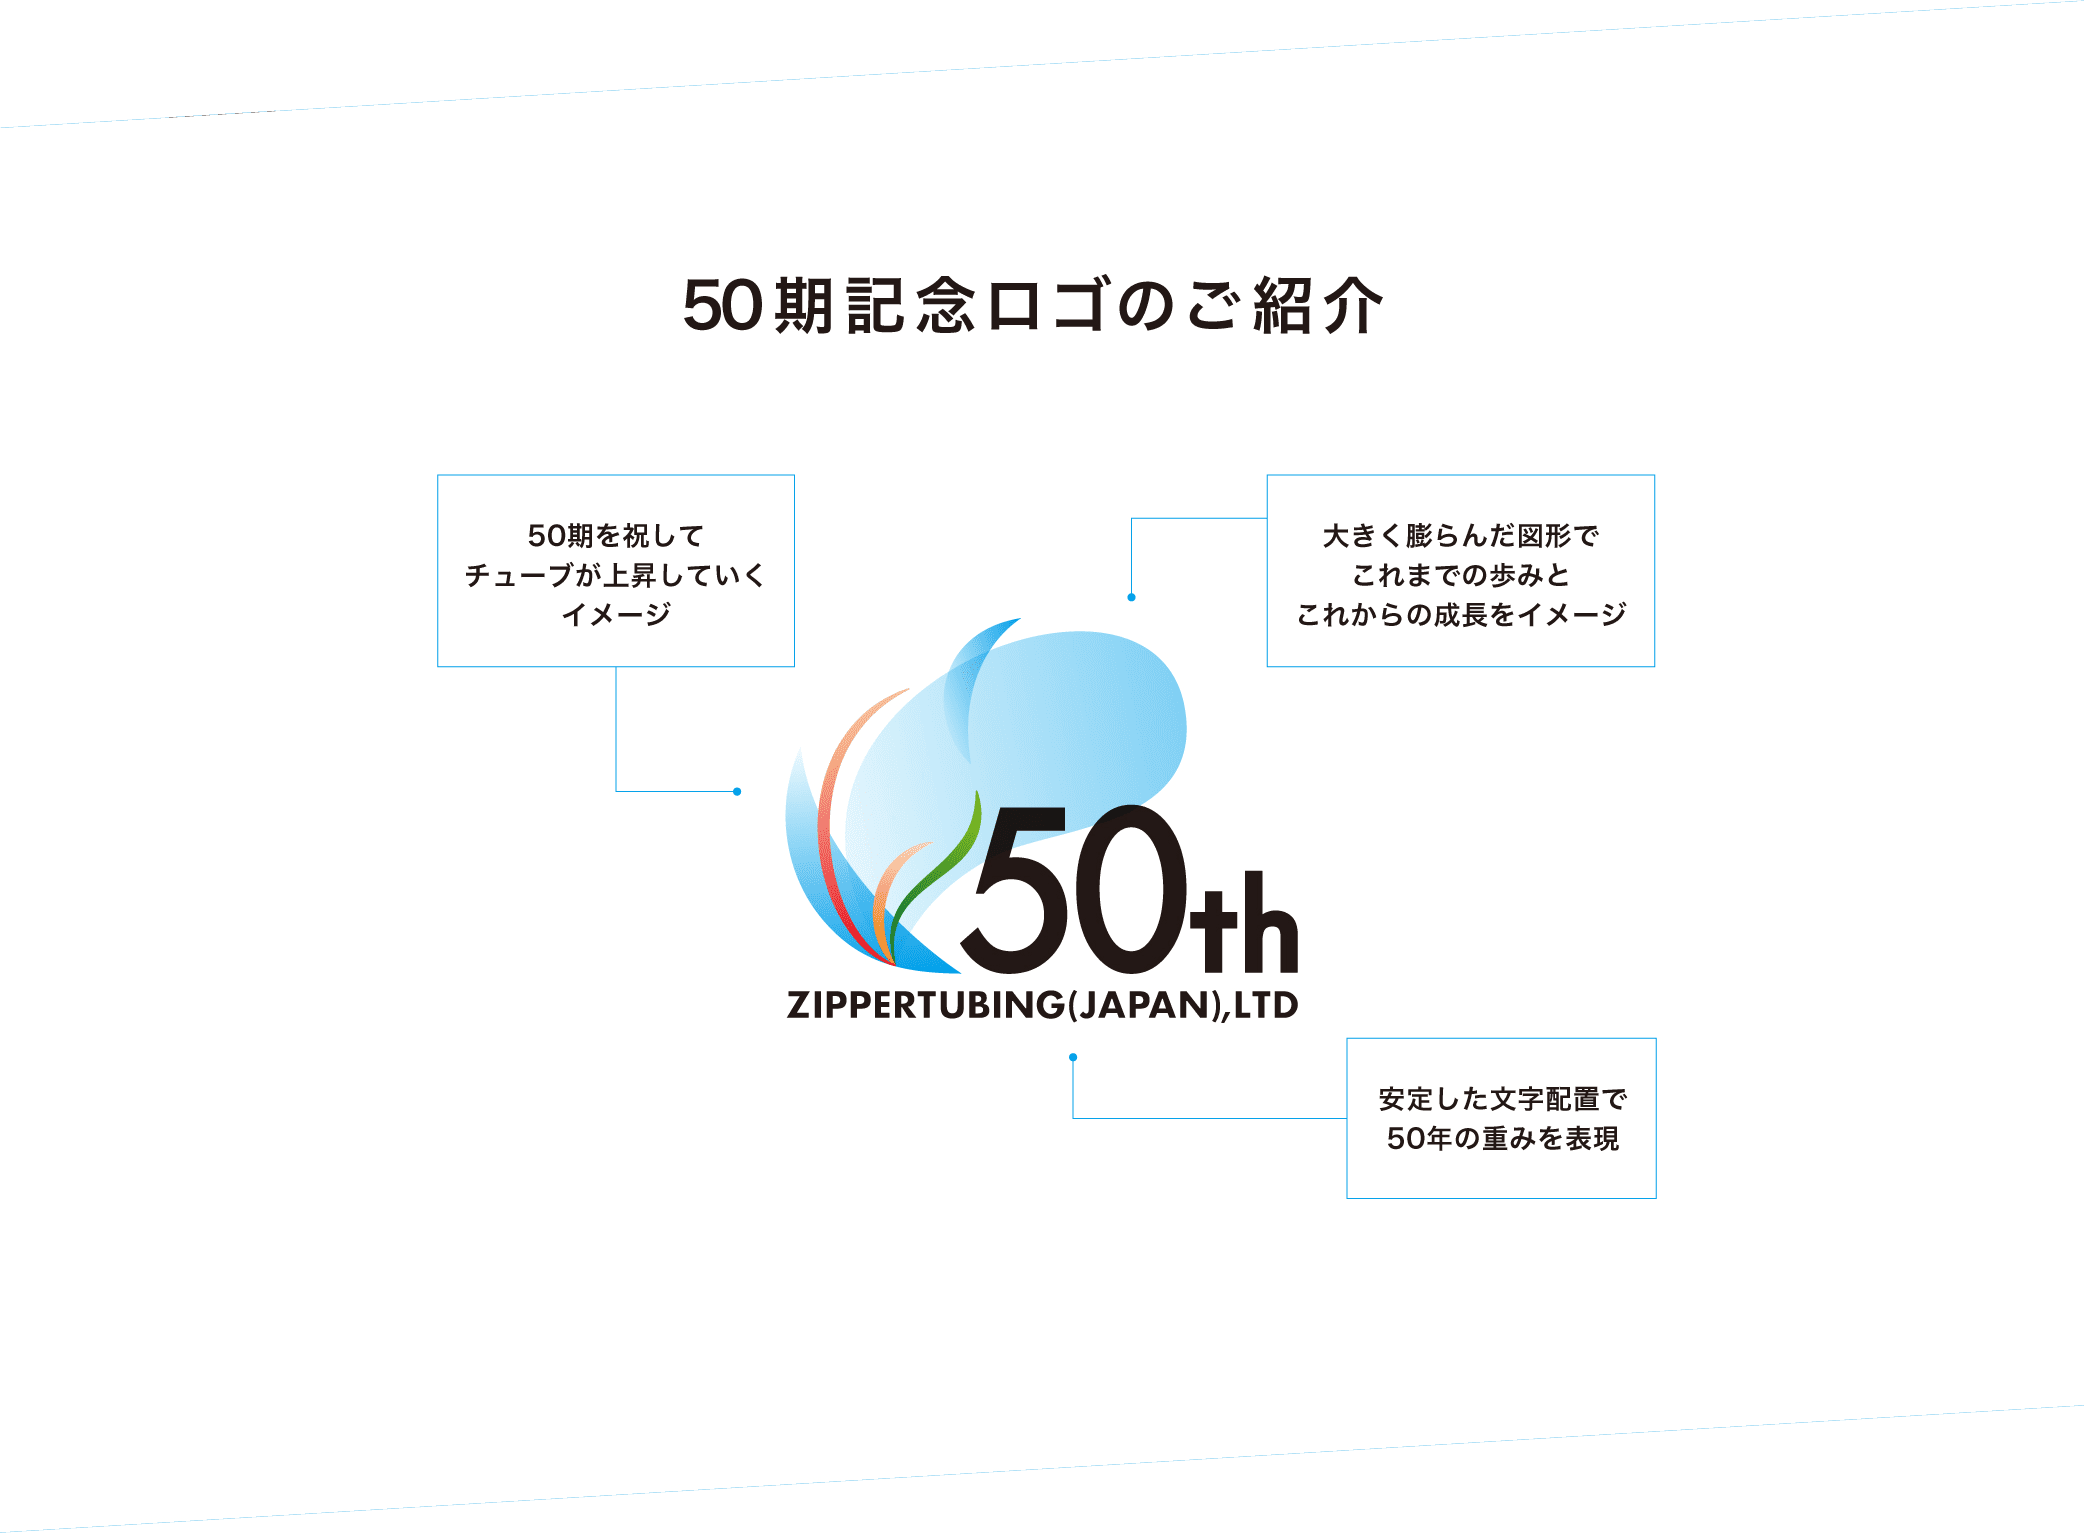 50期記念ロゴのご紹介